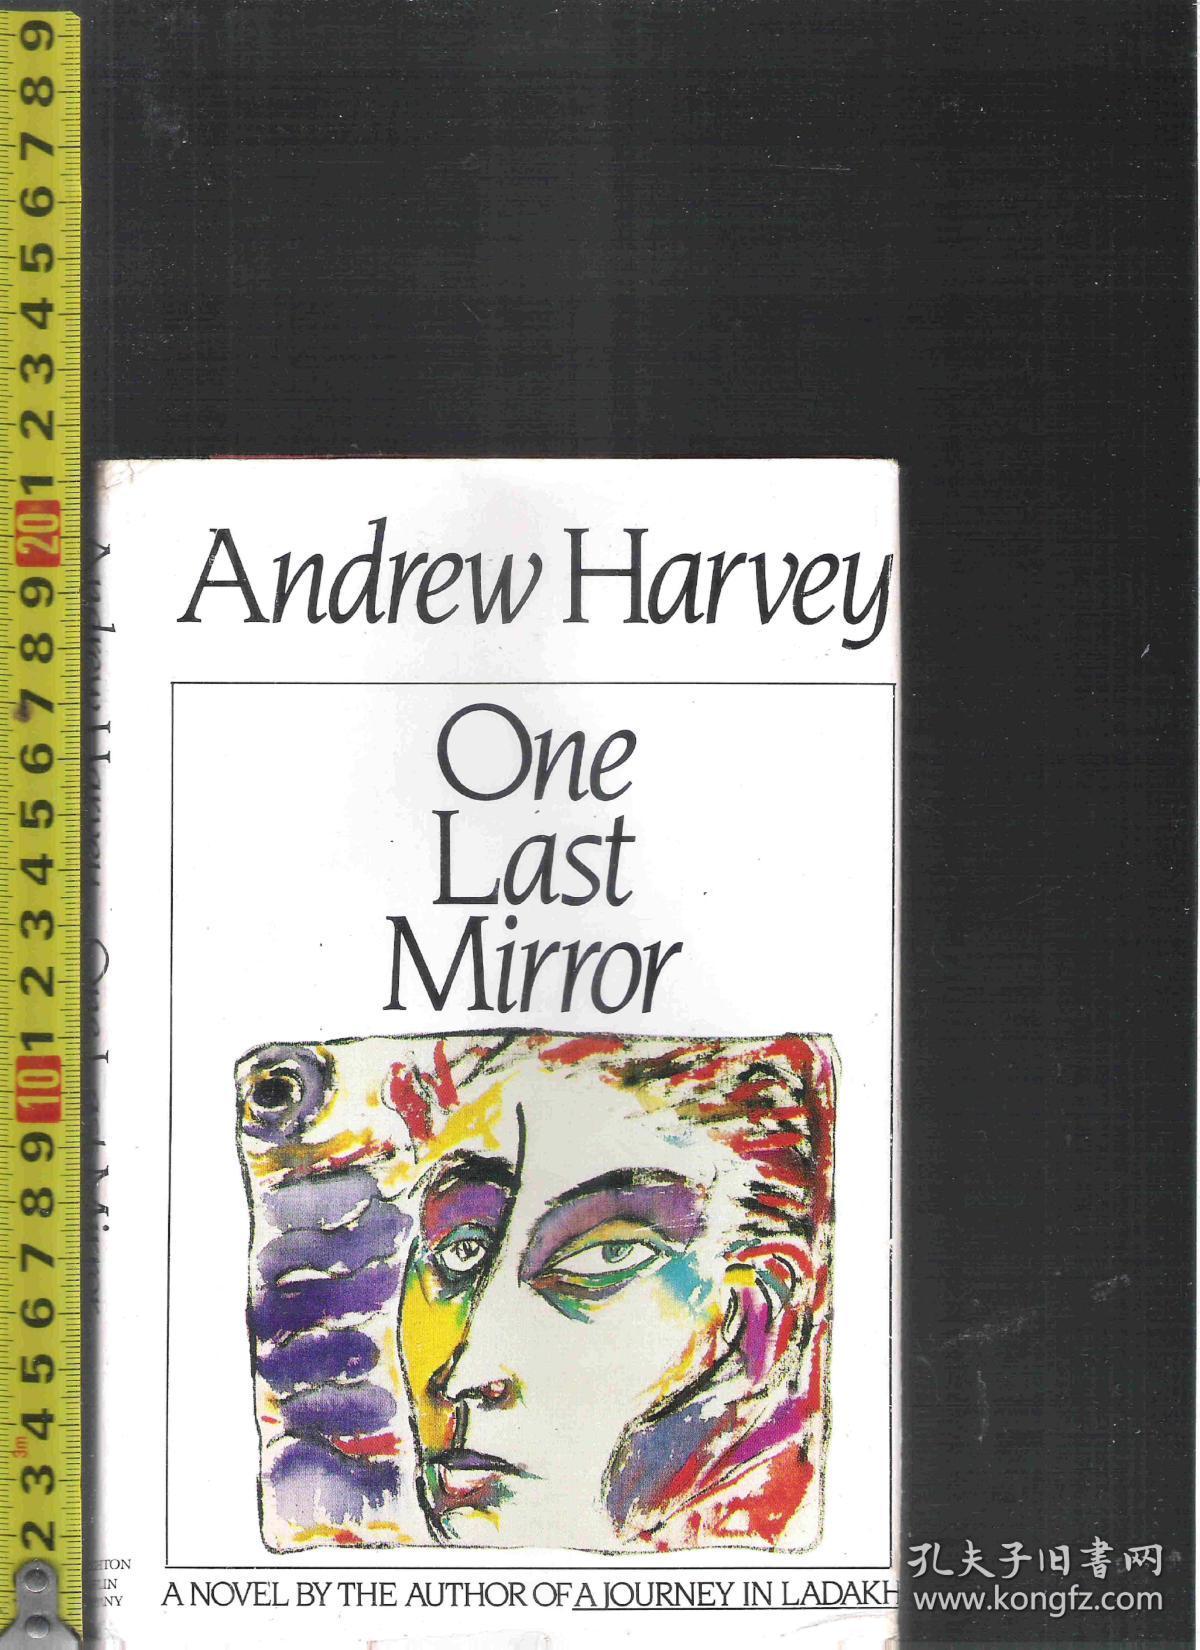 【精装本礼品书】原版英语小说 One Last Mirror / Andrew Harvey【店里有许多英文原版小说欢迎选购】